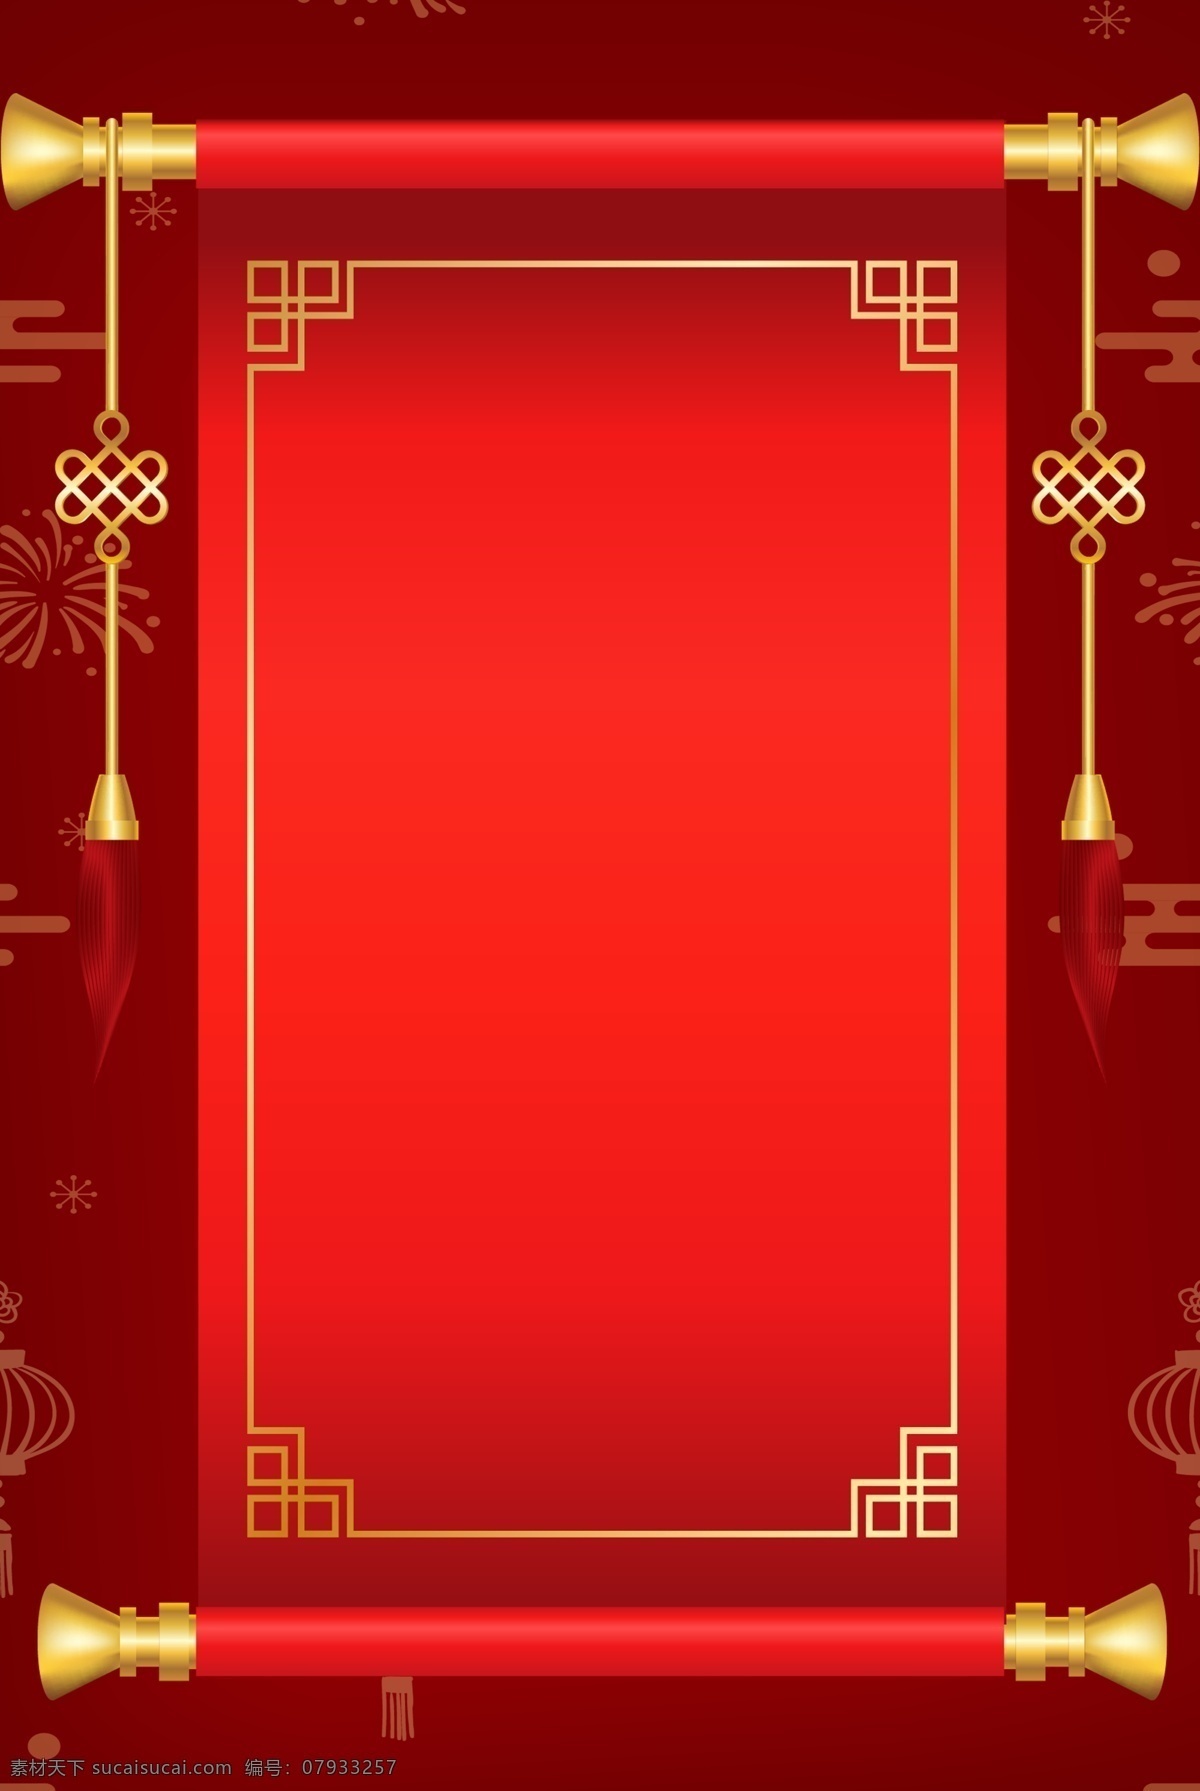 金榜题名 红榜 高考 中国 风 红色 背景 中国风 喜报 喜庆 红色背景 卷轴